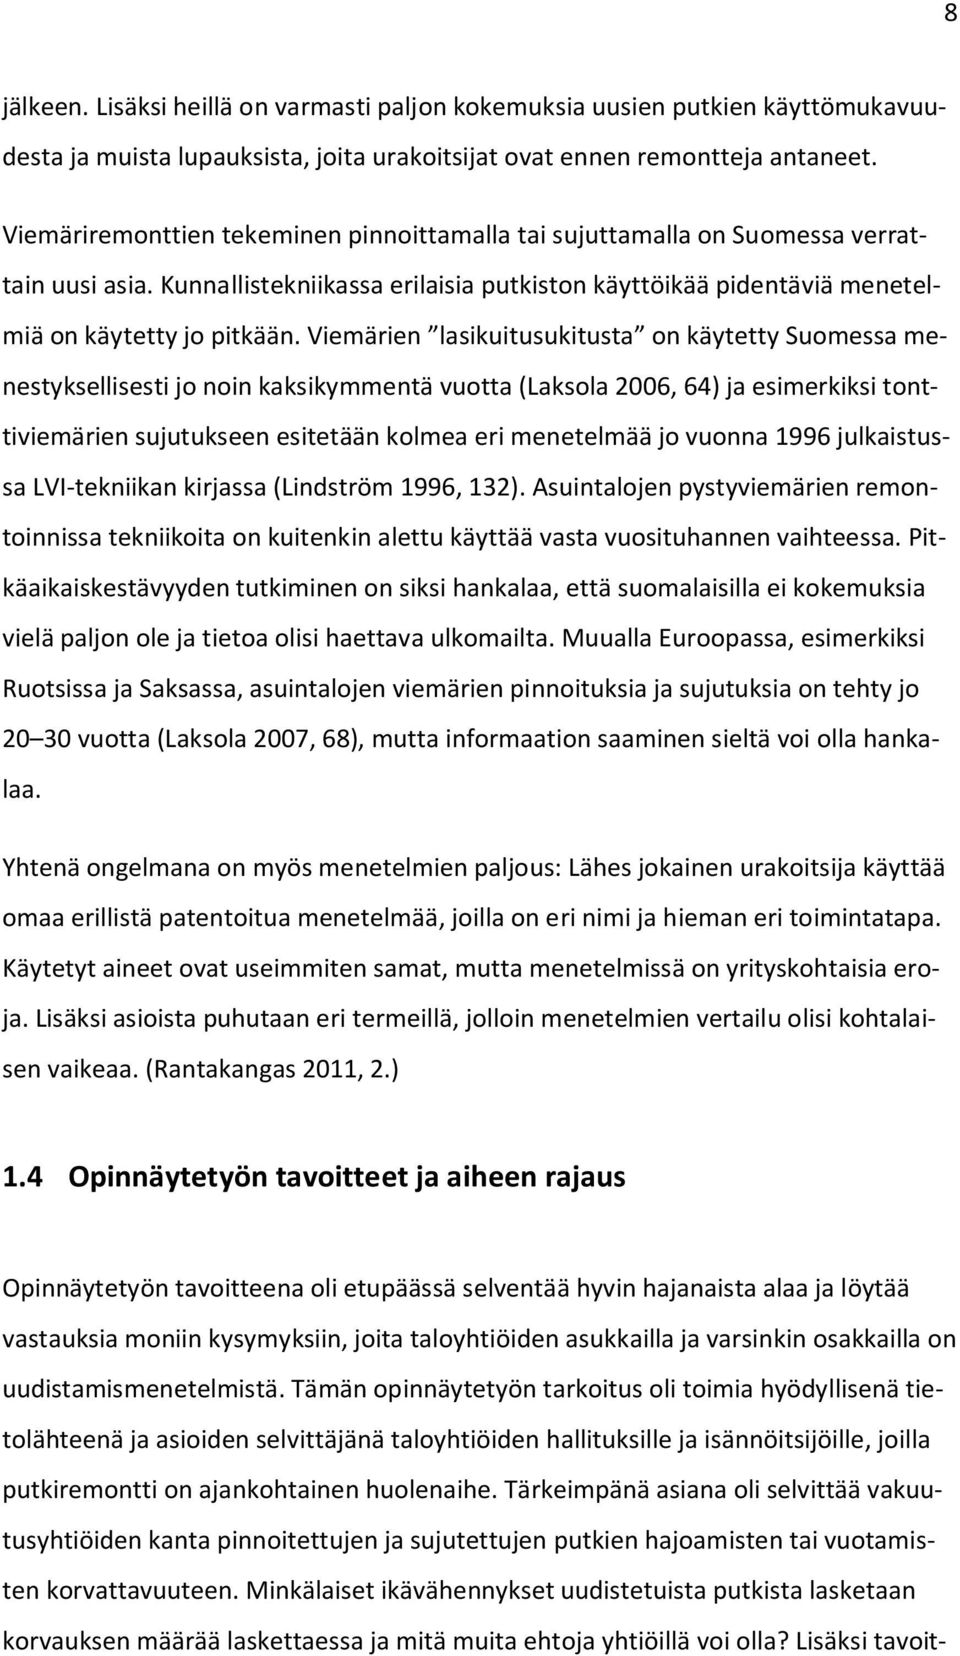 Viemärien lasikuitusukitusta on käytetty Suomessa menestyksellisesti jo noin kaksikymmentä vuotta (Laksola 2006, 64) ja esimerkiksi tonttiviemärien sujutukseen esitetään kolmea eri menetelmää jo